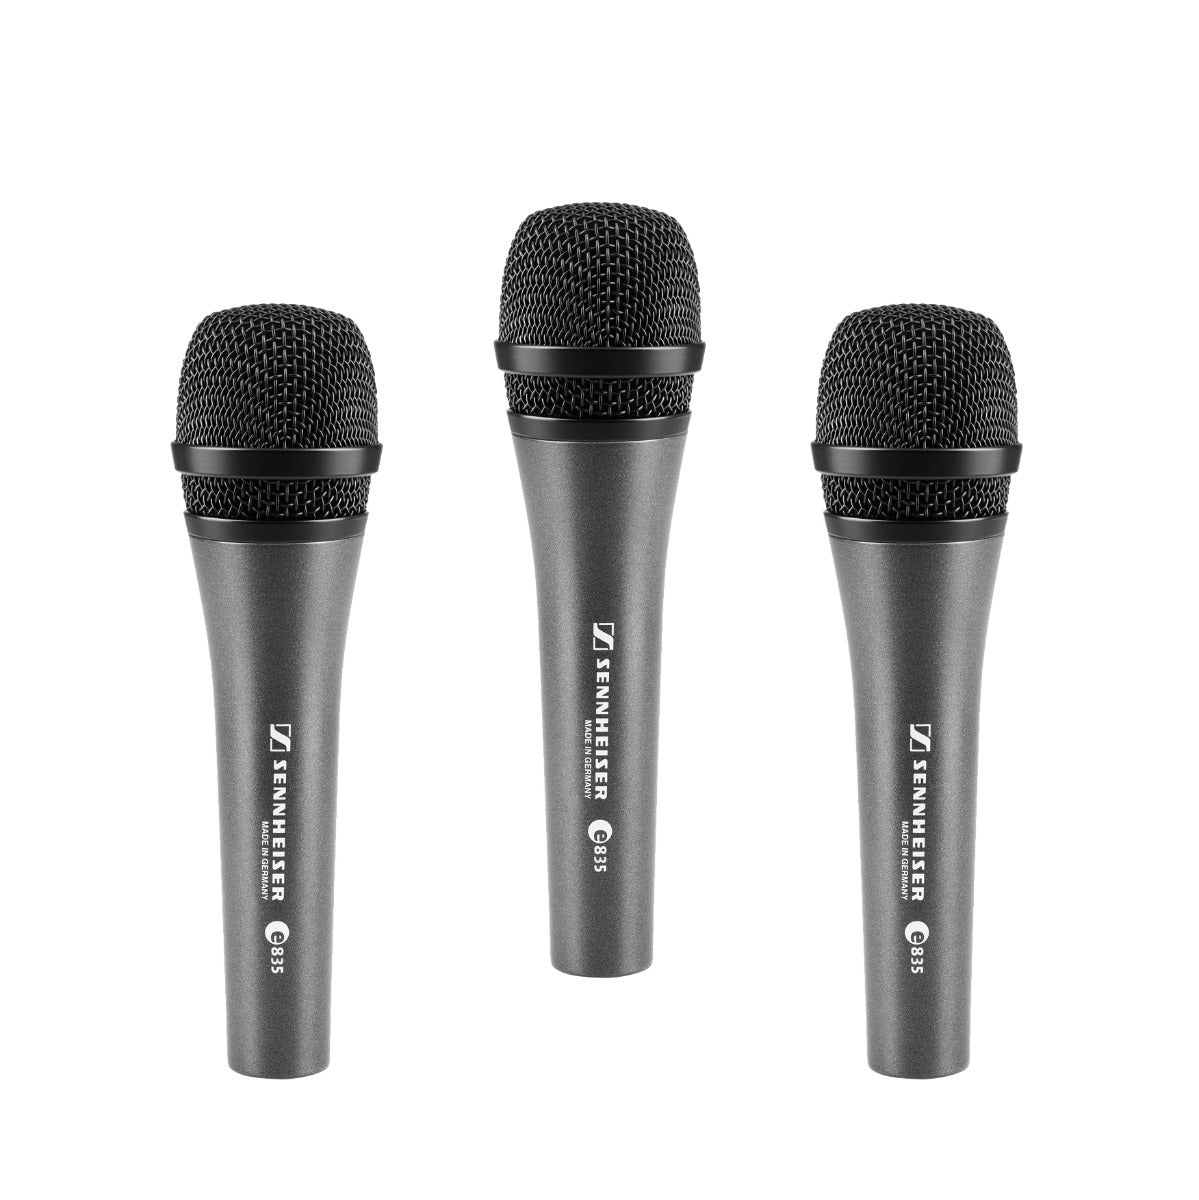 Sennheiser e 835 Dynamic Vocal Microphone - 3 Pack